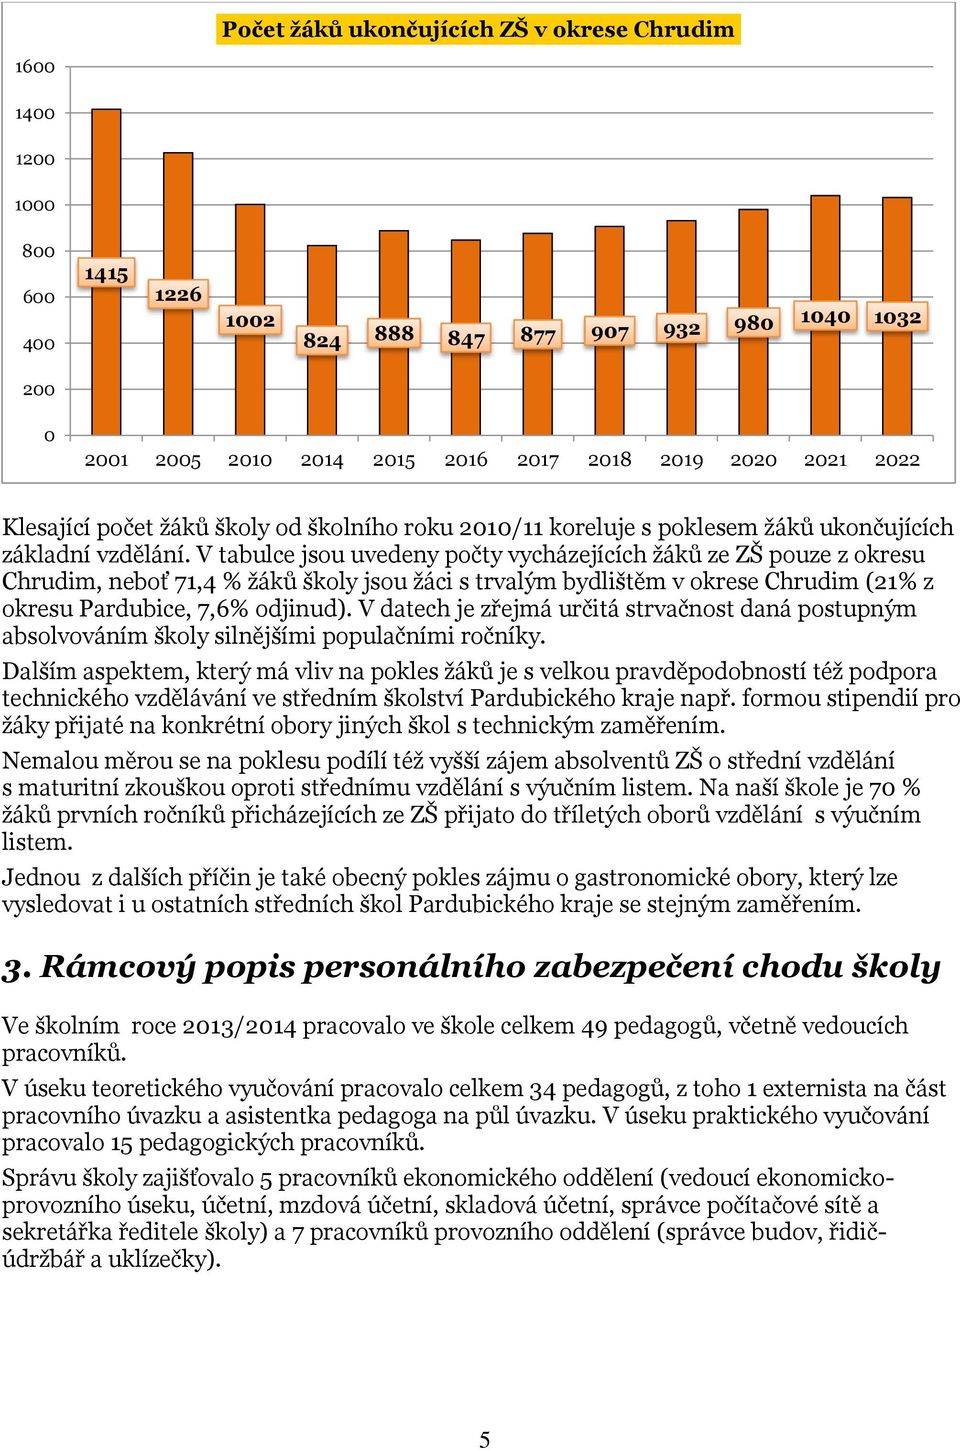 V tabulce jsou uvedeny počty vycházejících žáků ze ZŠ pouze z okresu Chrudim, neboť 71,4 % žáků školy jsou žáci s trvalým bydlištěm v okrese Chrudim (21% z okresu Pardubice, 7,6% odjinud).